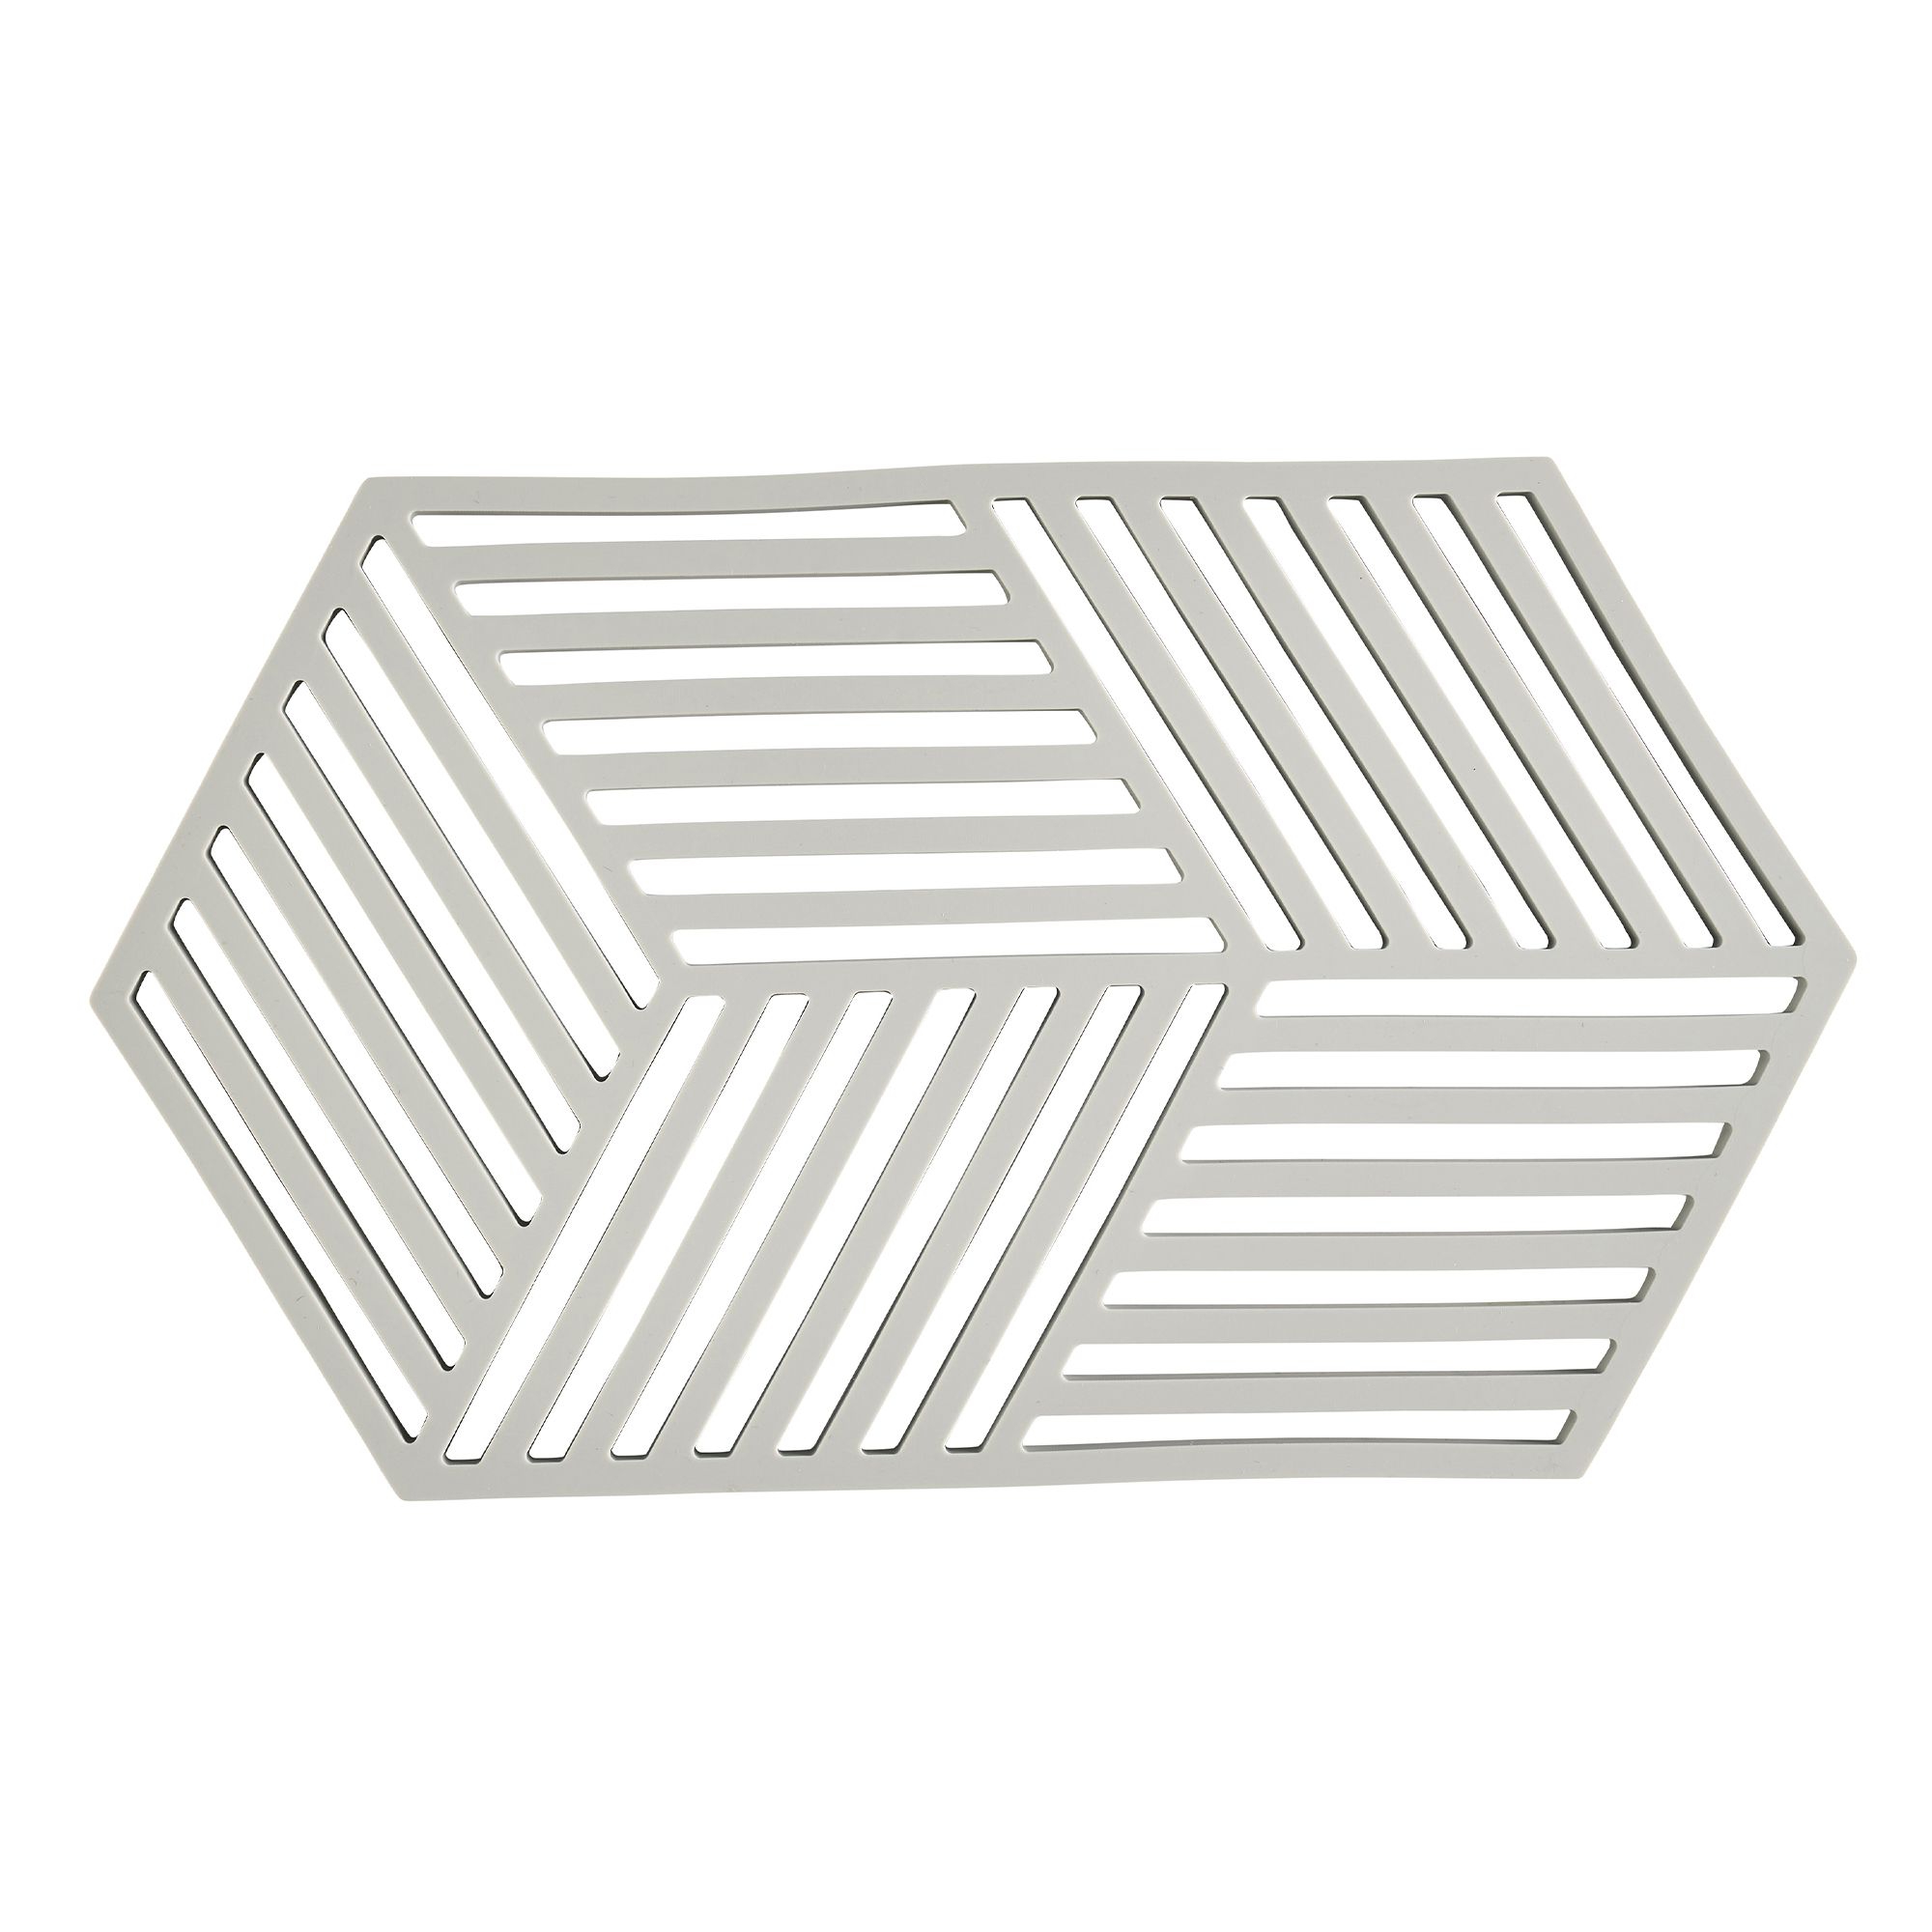 Zone - Hexagon Trivet - Warm Grey